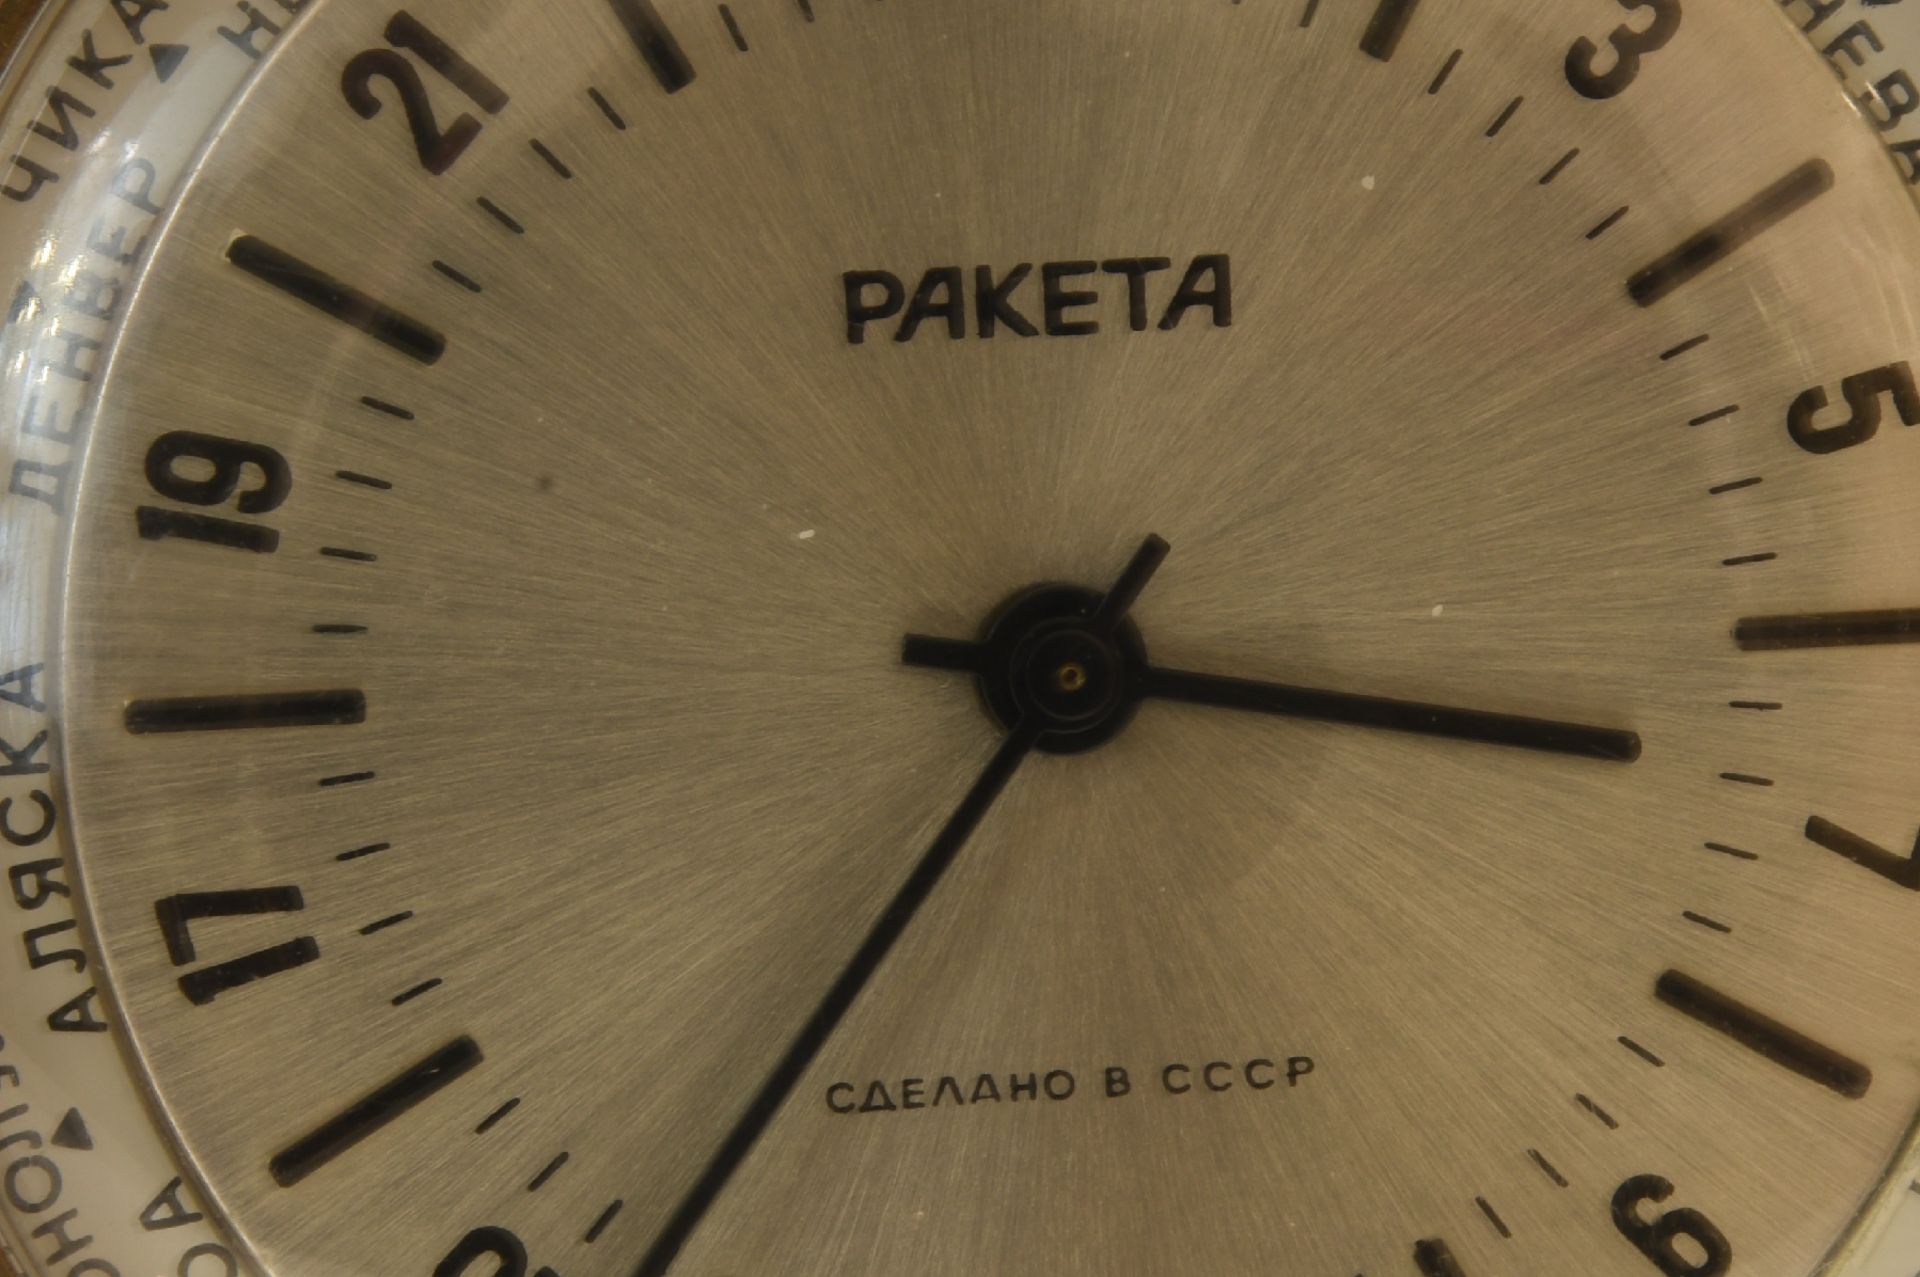 Raketa Plaque Weltzeit Uhr ohne Band | Raketa Plaque World Time Watch without Strap - Image 5 of 5